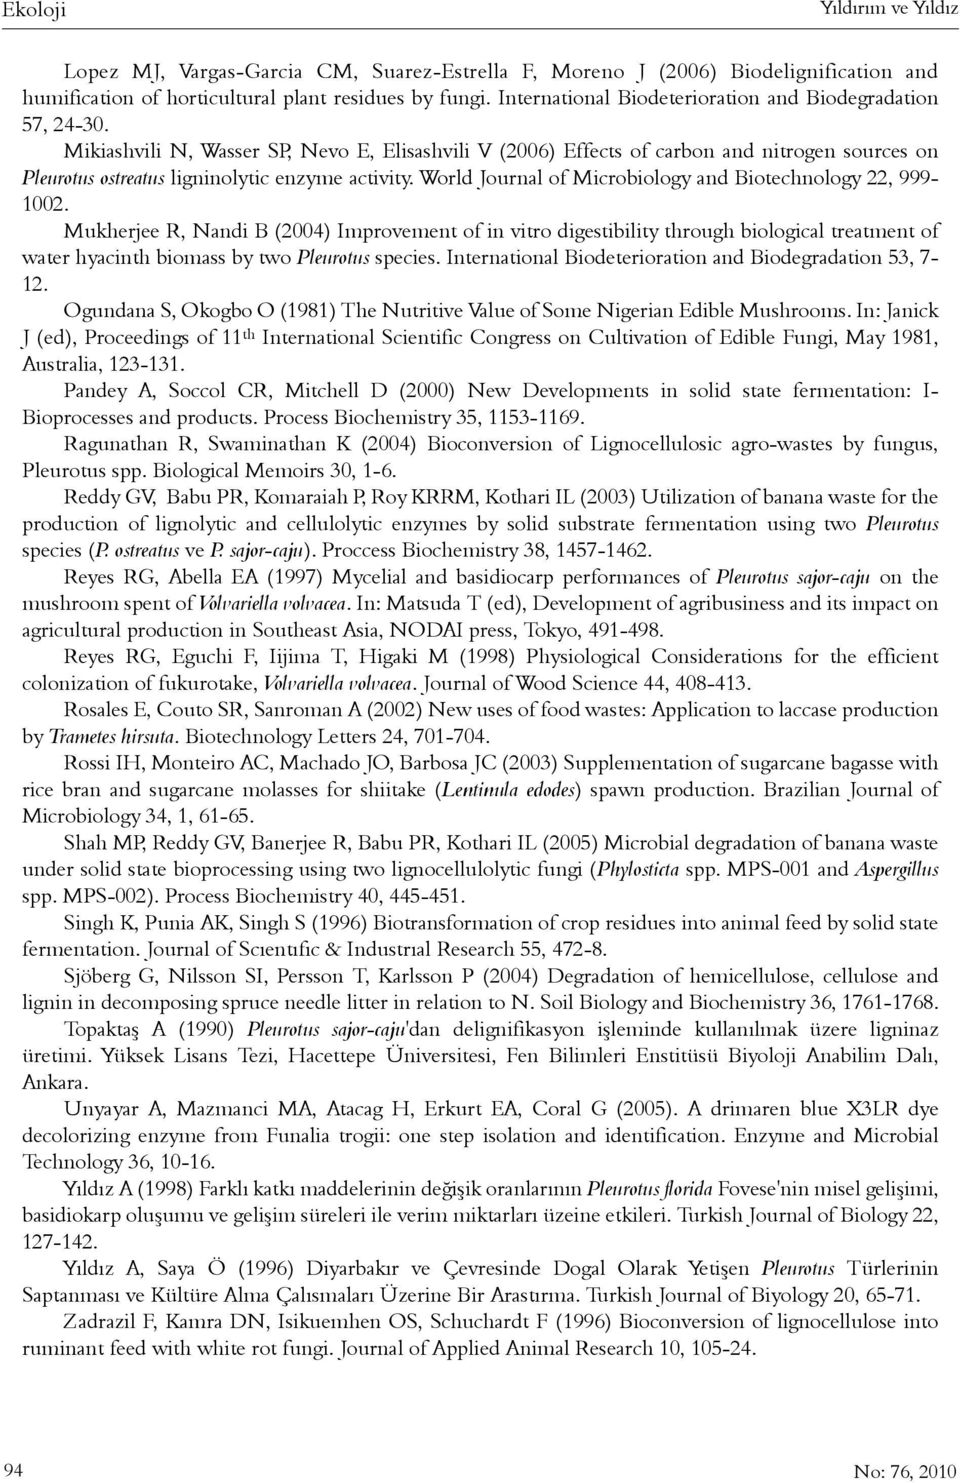 Mikiashvili N, Wasser SP, Nevo E, Elisashvili V (2006) Effects of carbon and nitrogen sources on Pleurotus ostreatus ligninolytic enzyme activity.